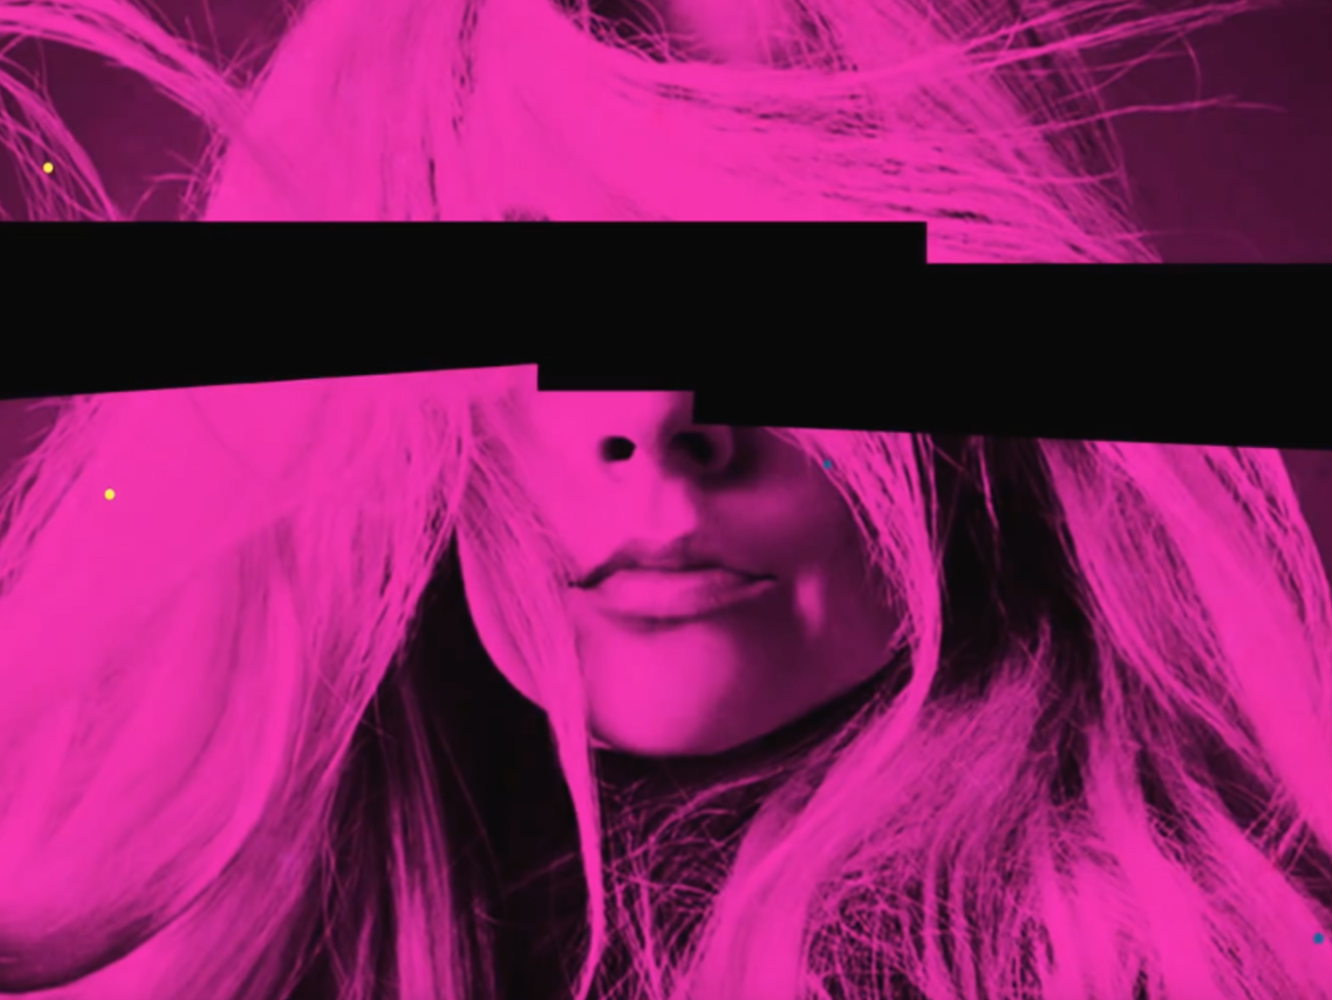  Según parece, Avril Hasbeen sigue acordándose de aquel tema que lanzó con Nicki Minaj